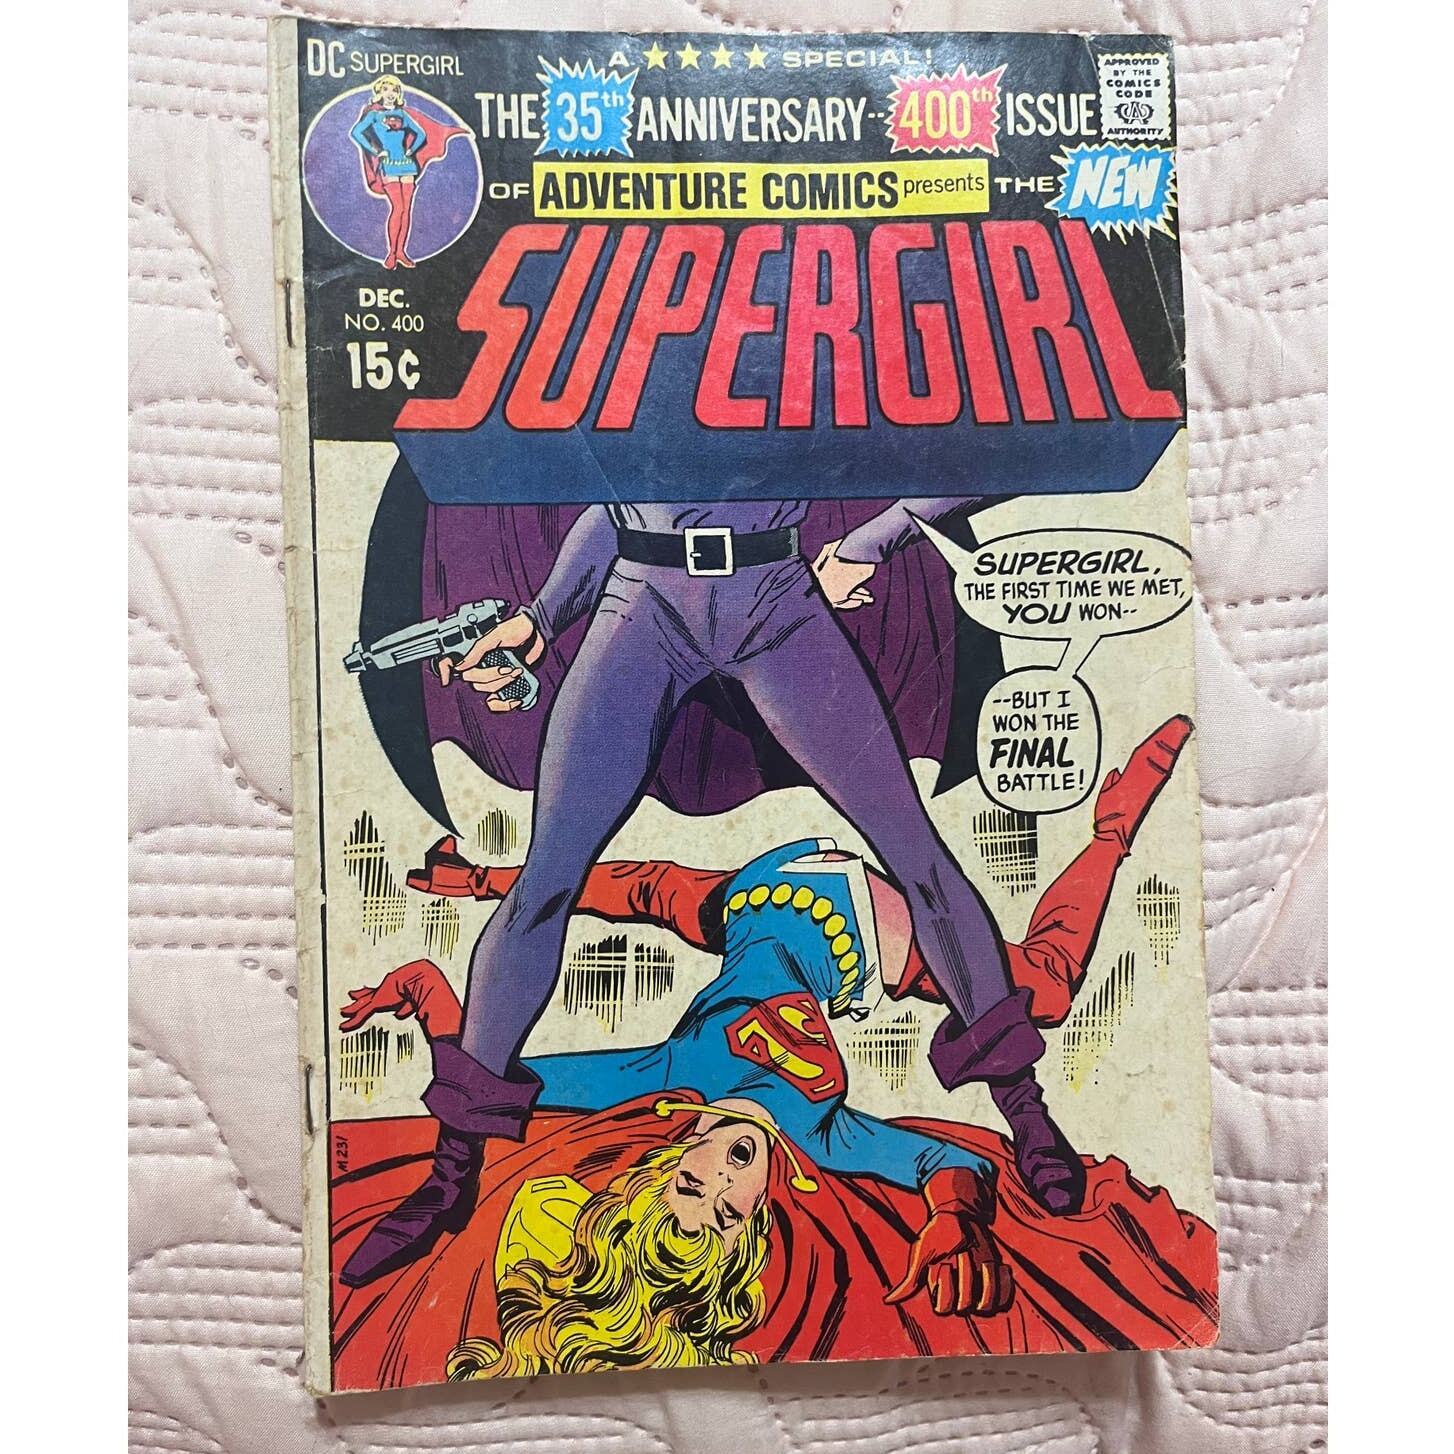 Supergirl No 400 35th Anniversary of Adventure Comics. Dec 1970. 